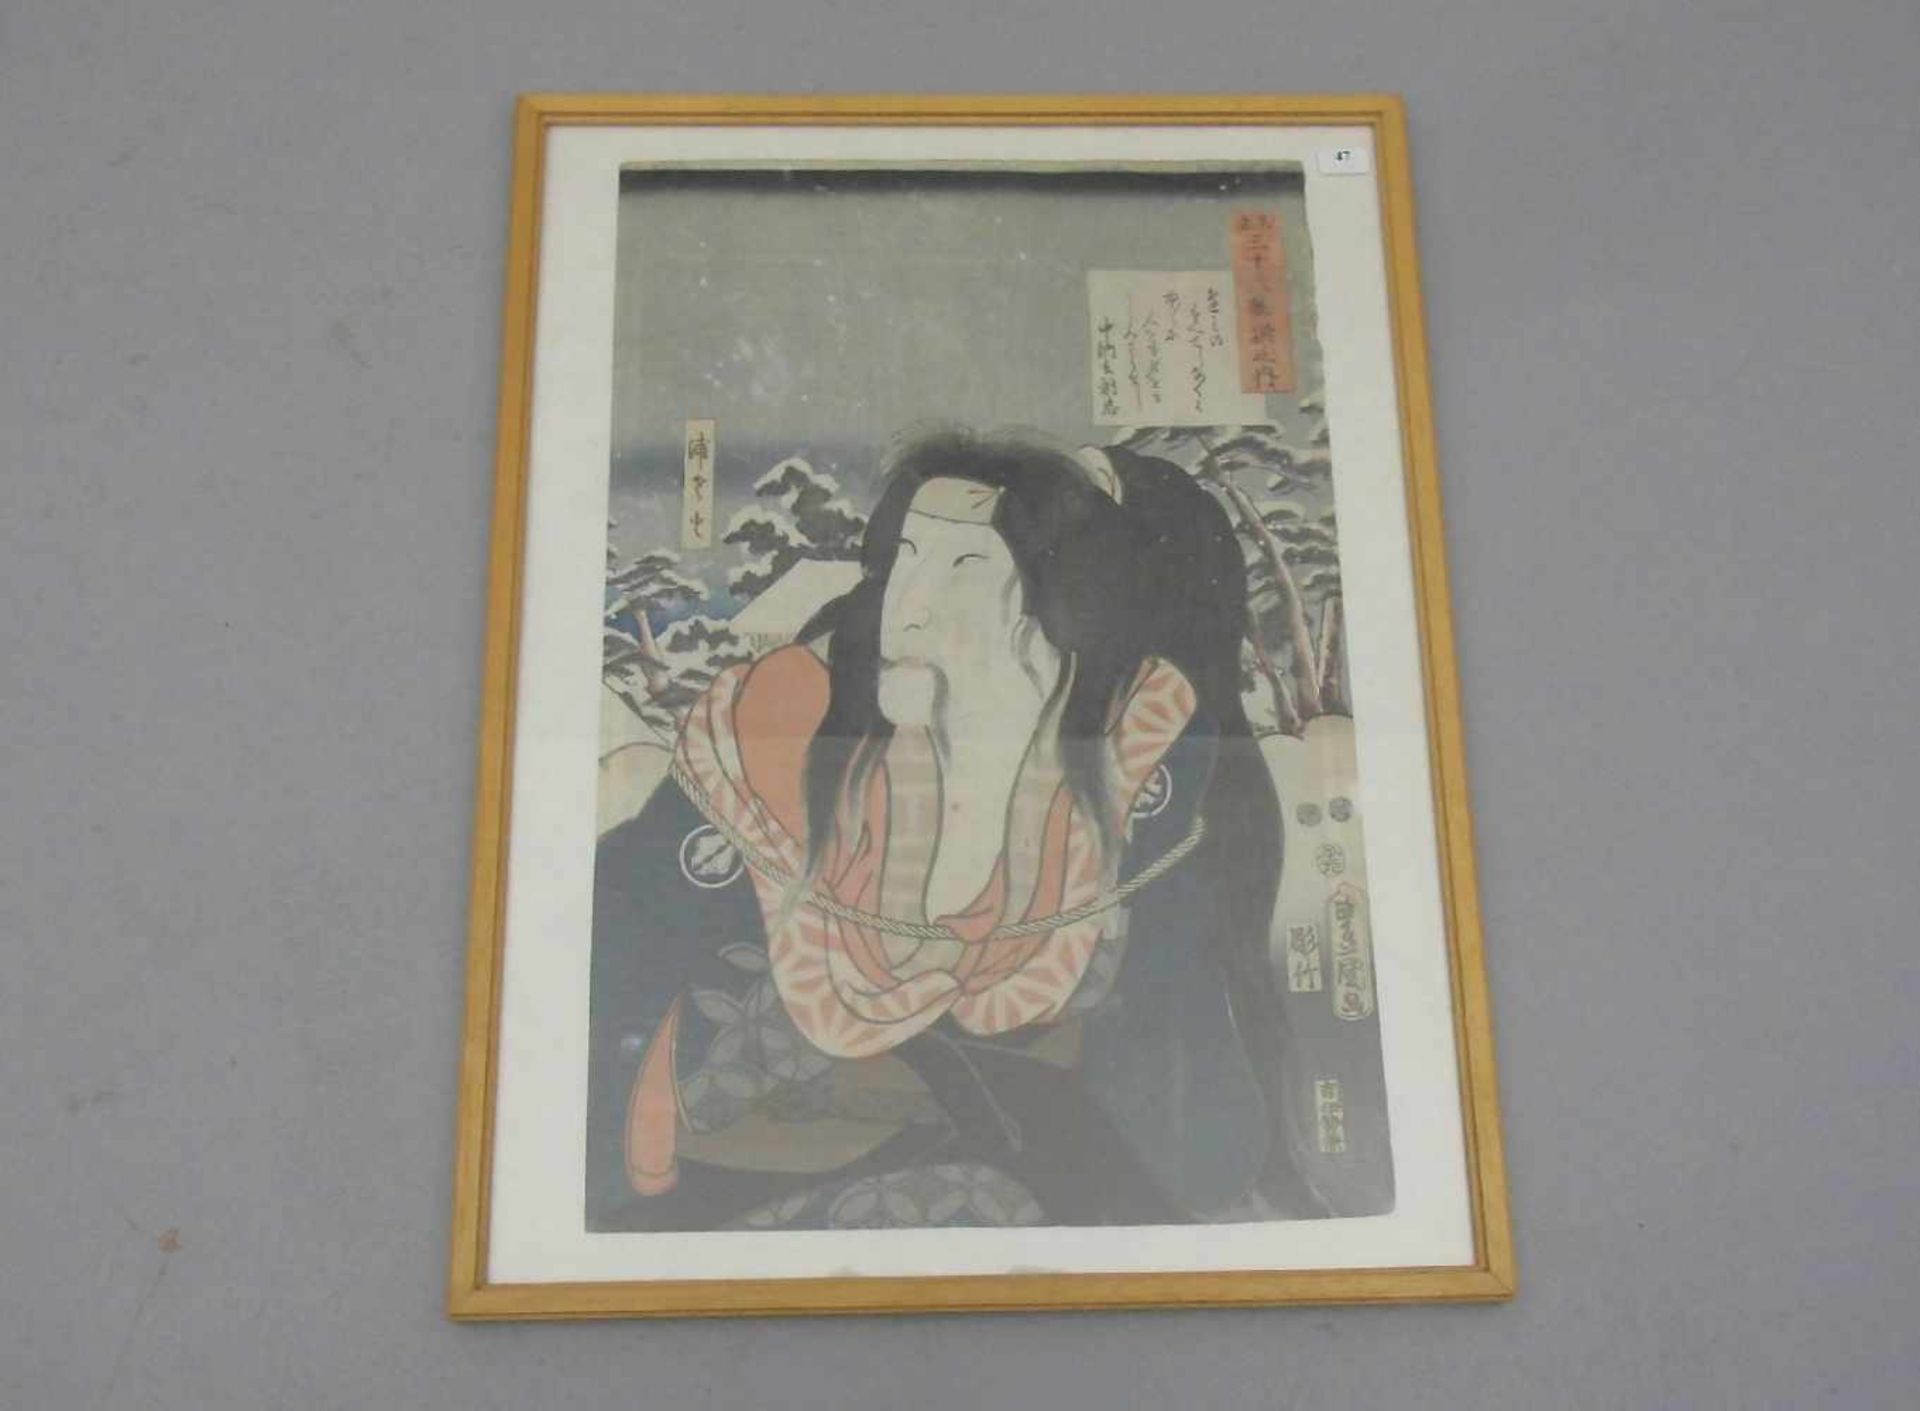 JAPANISCHER FARBHOLZSCHNITT: "Brustbild eines Samurais in Winterlandschaft", 19. Jh., auf Kartuschen